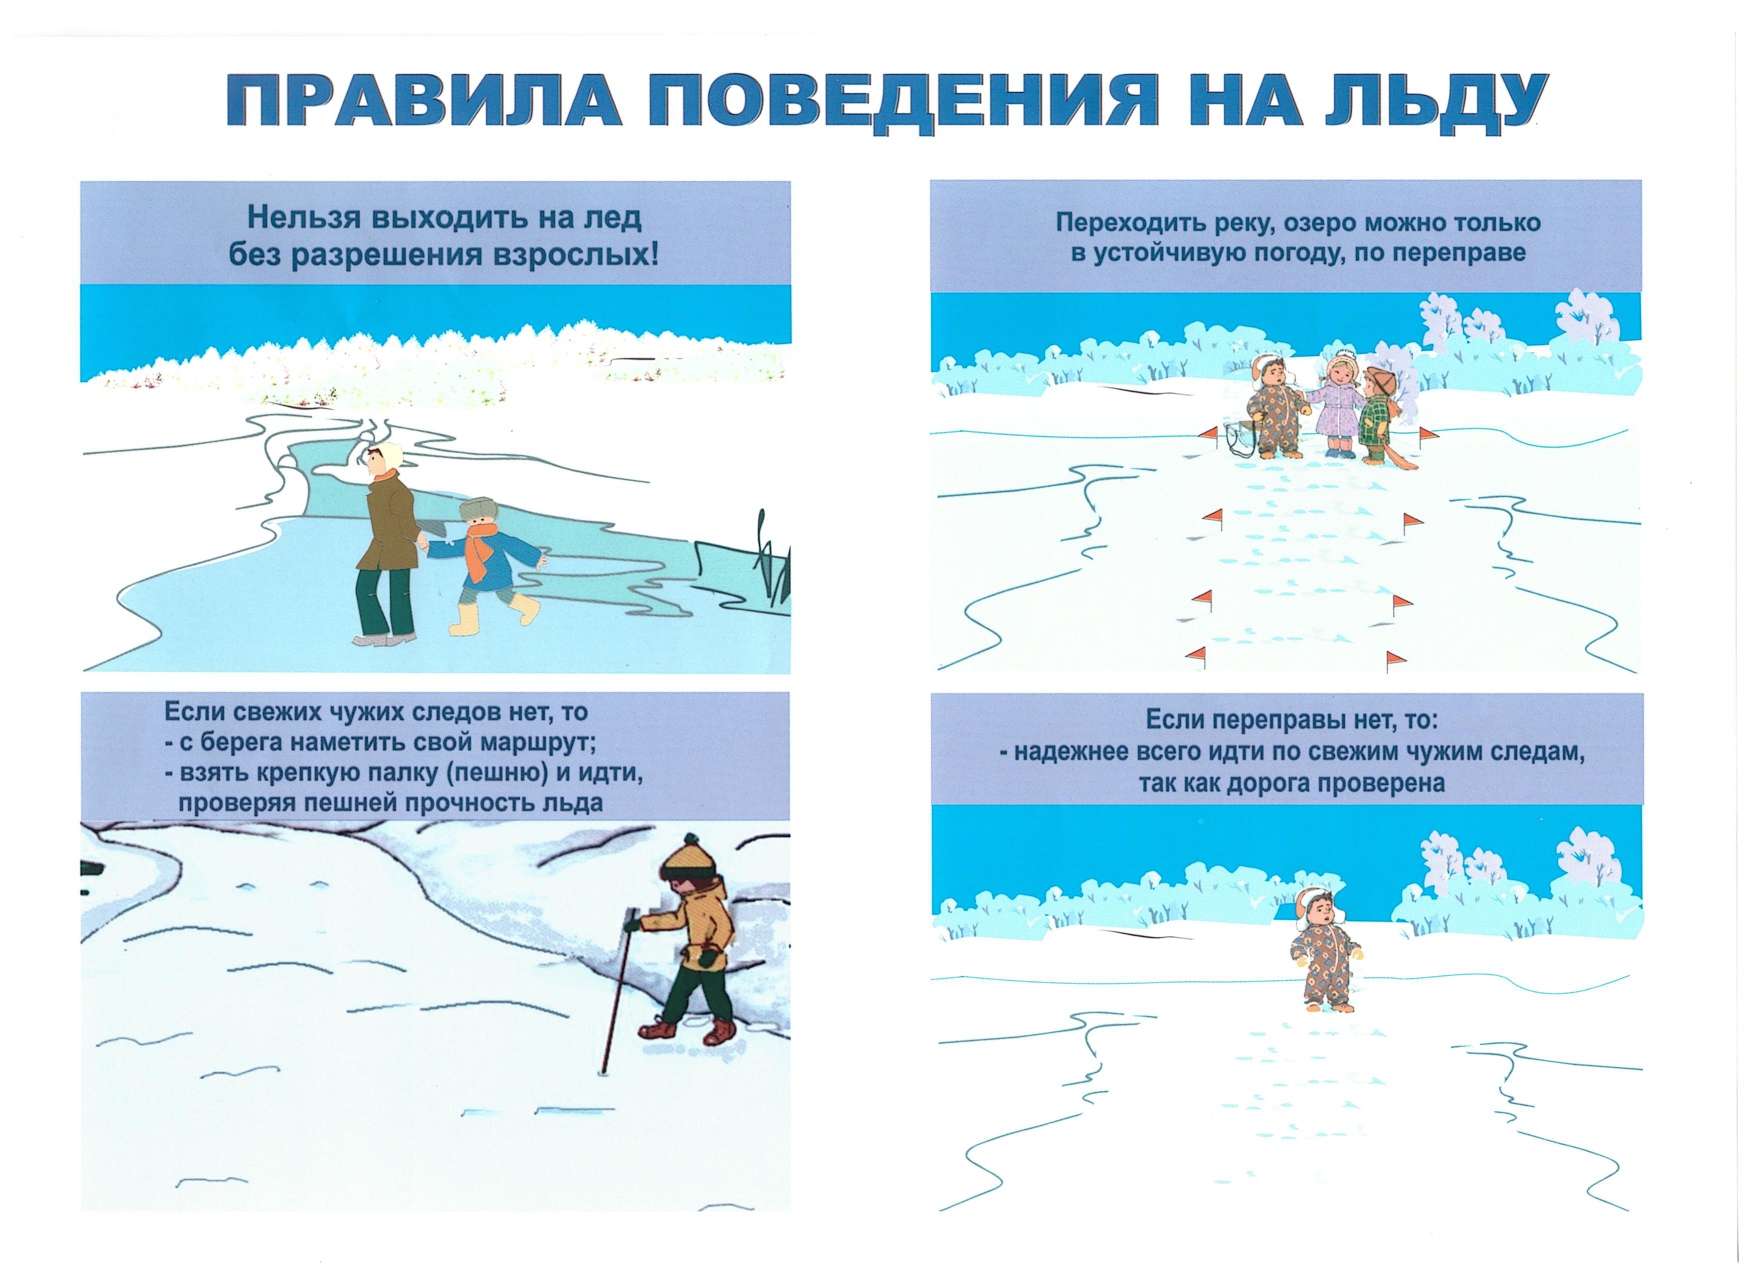 Игры на льду с правилами. Правила поведения на льду. Безопасное поведение на льду. Порядок и поведение на льду. Правила поведения на льду зимой.